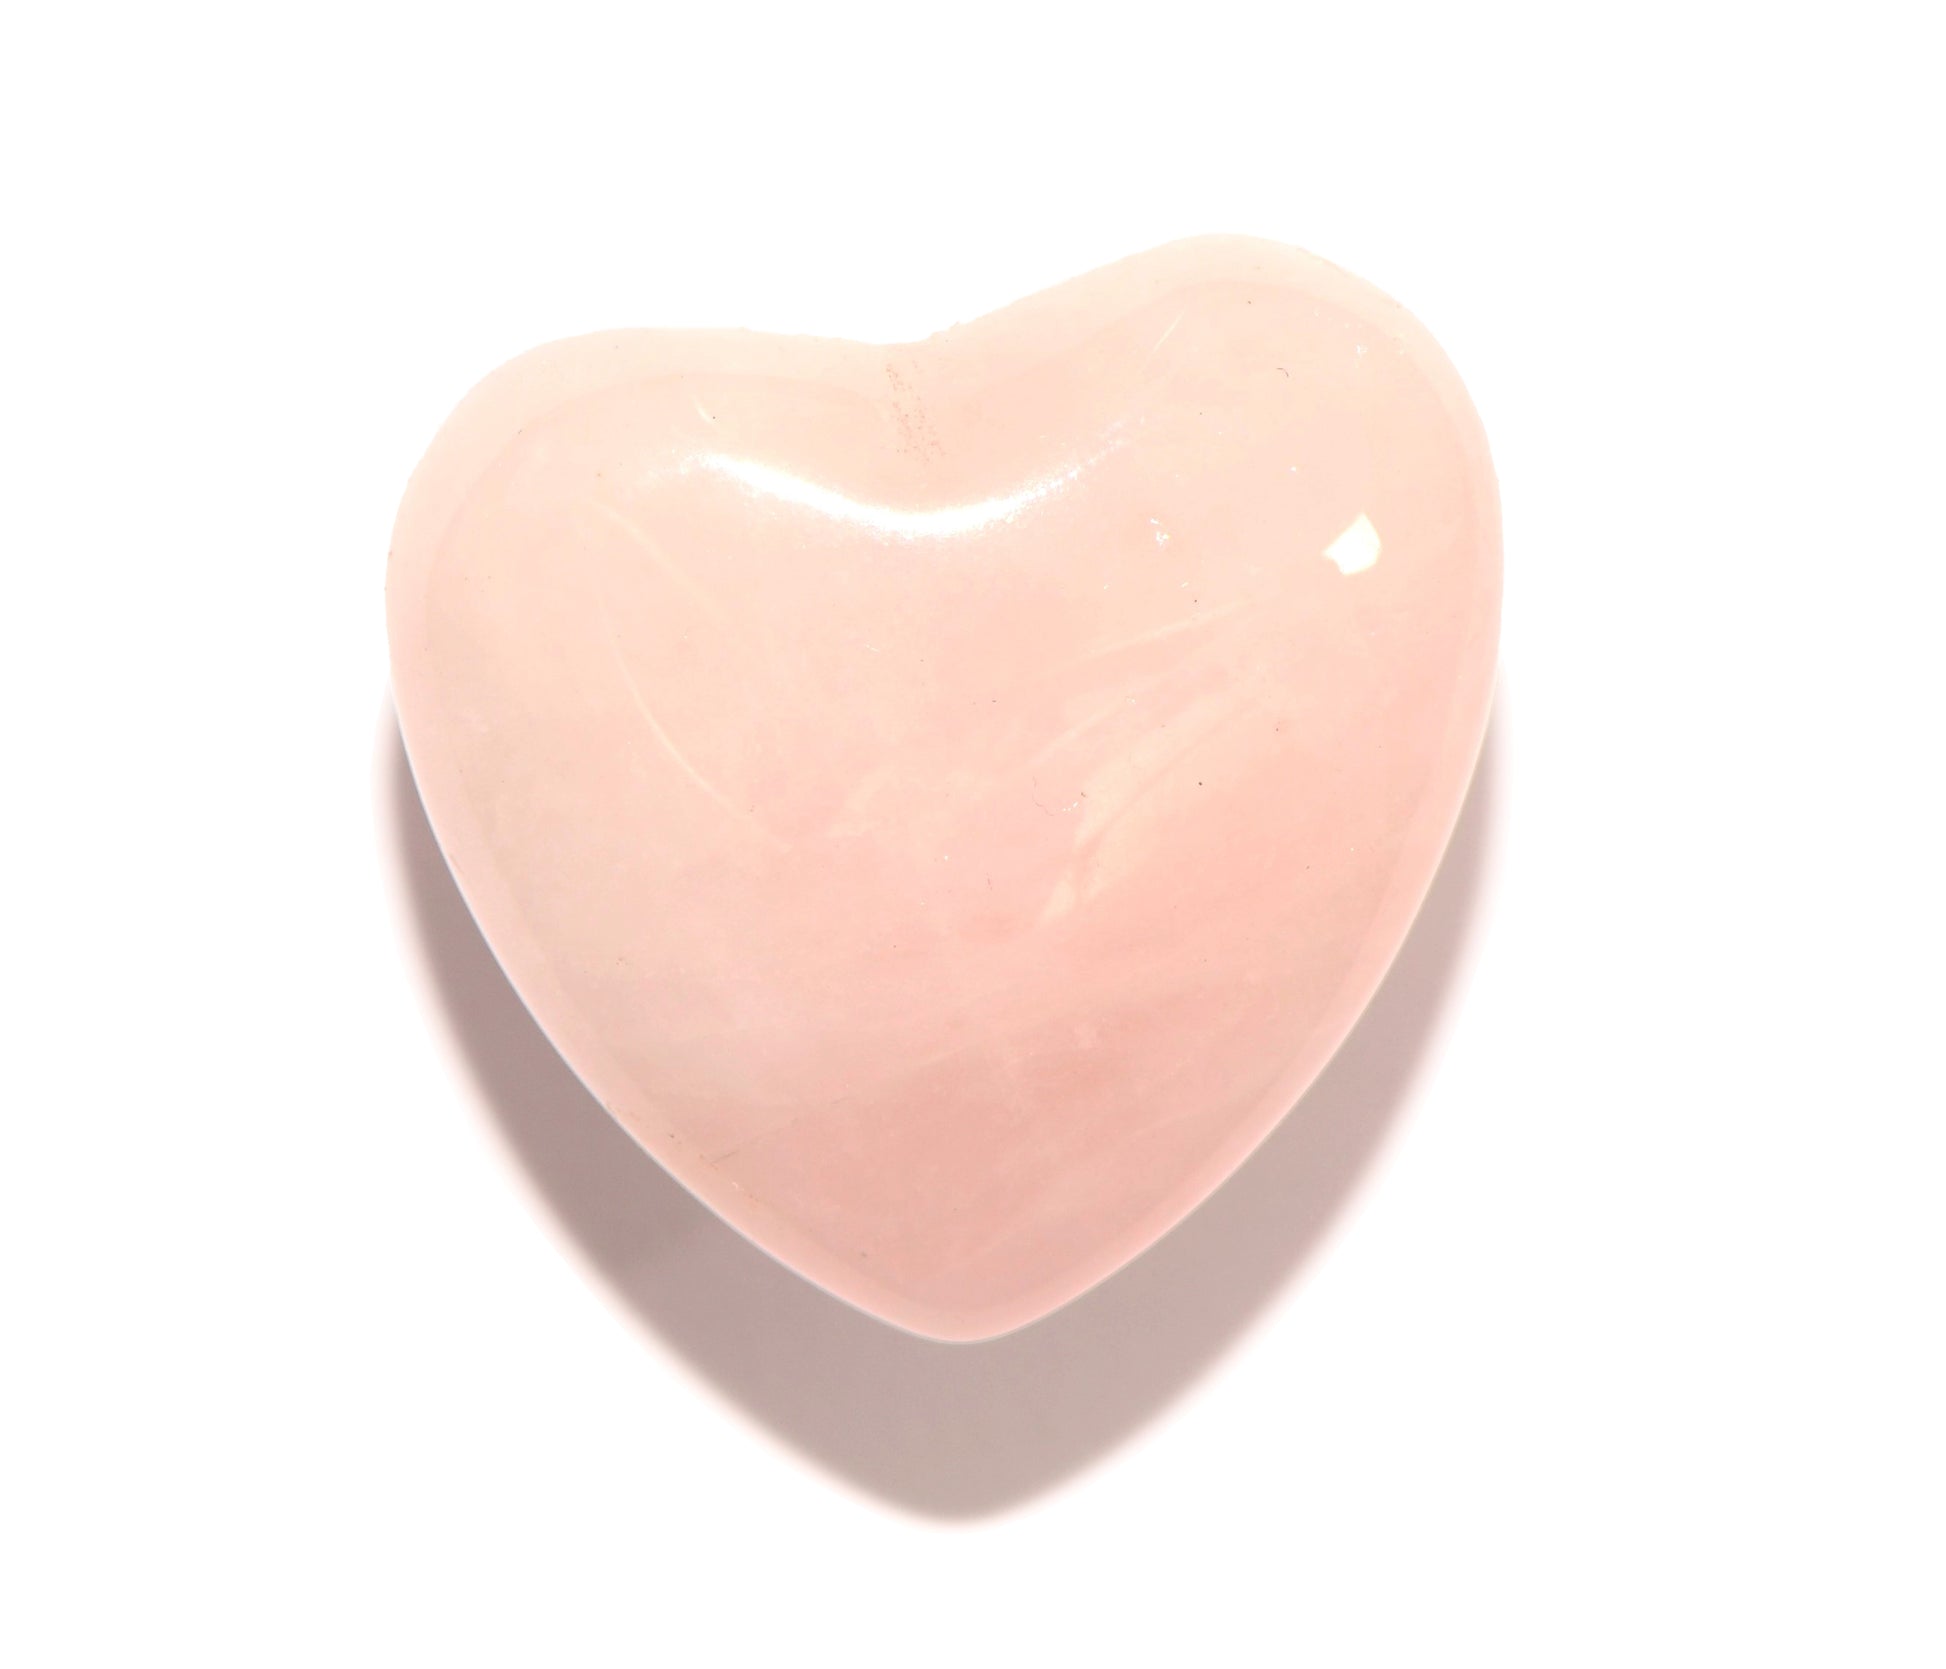 Rose Quartz Heart - Carved Crystal